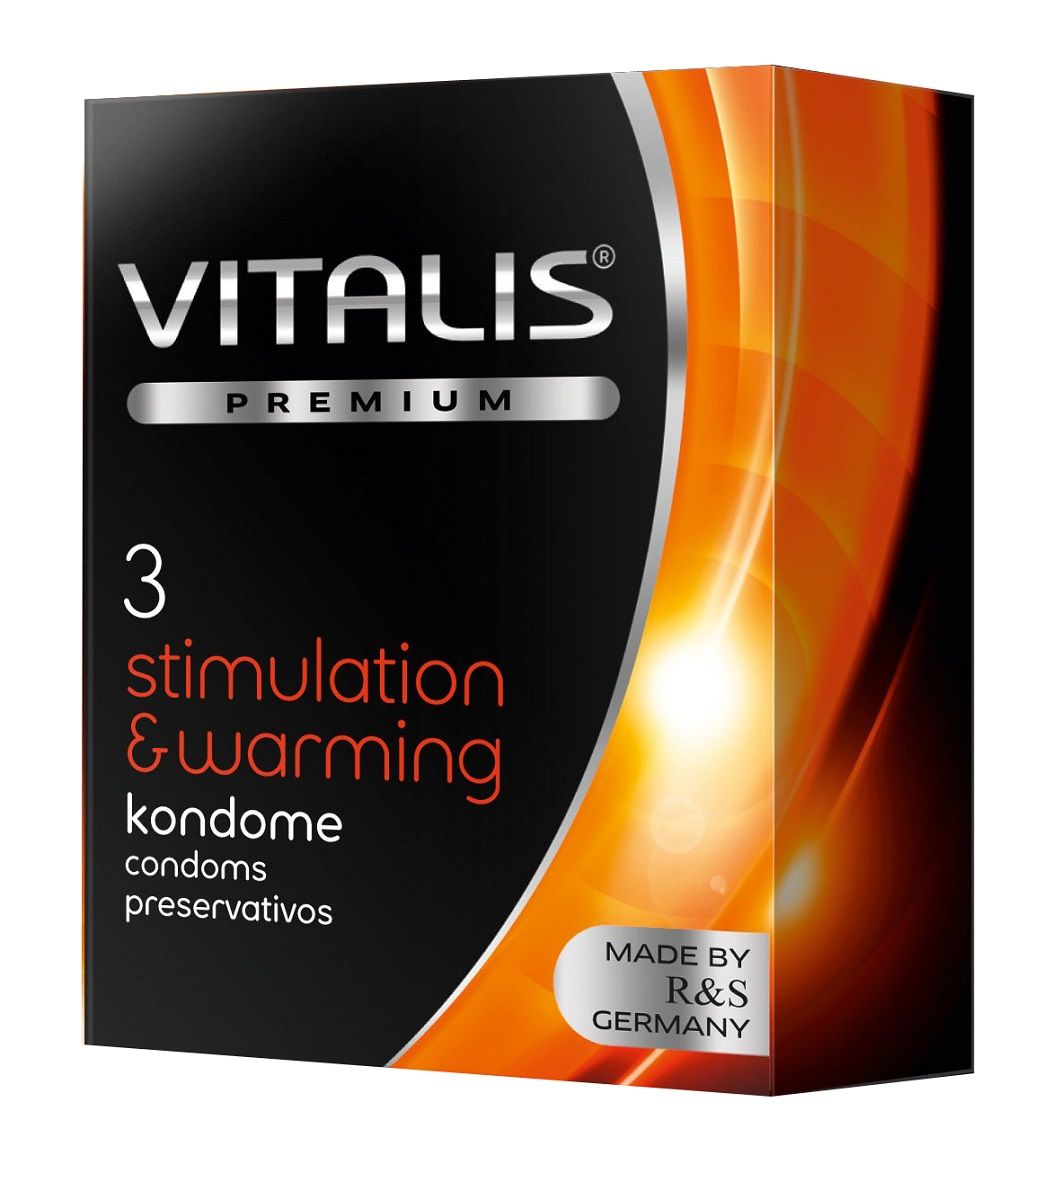 Презервативы VITALIS PREMIUM stimulation   warming с согревающим эффектом - 3 шт. от R&S GmbH